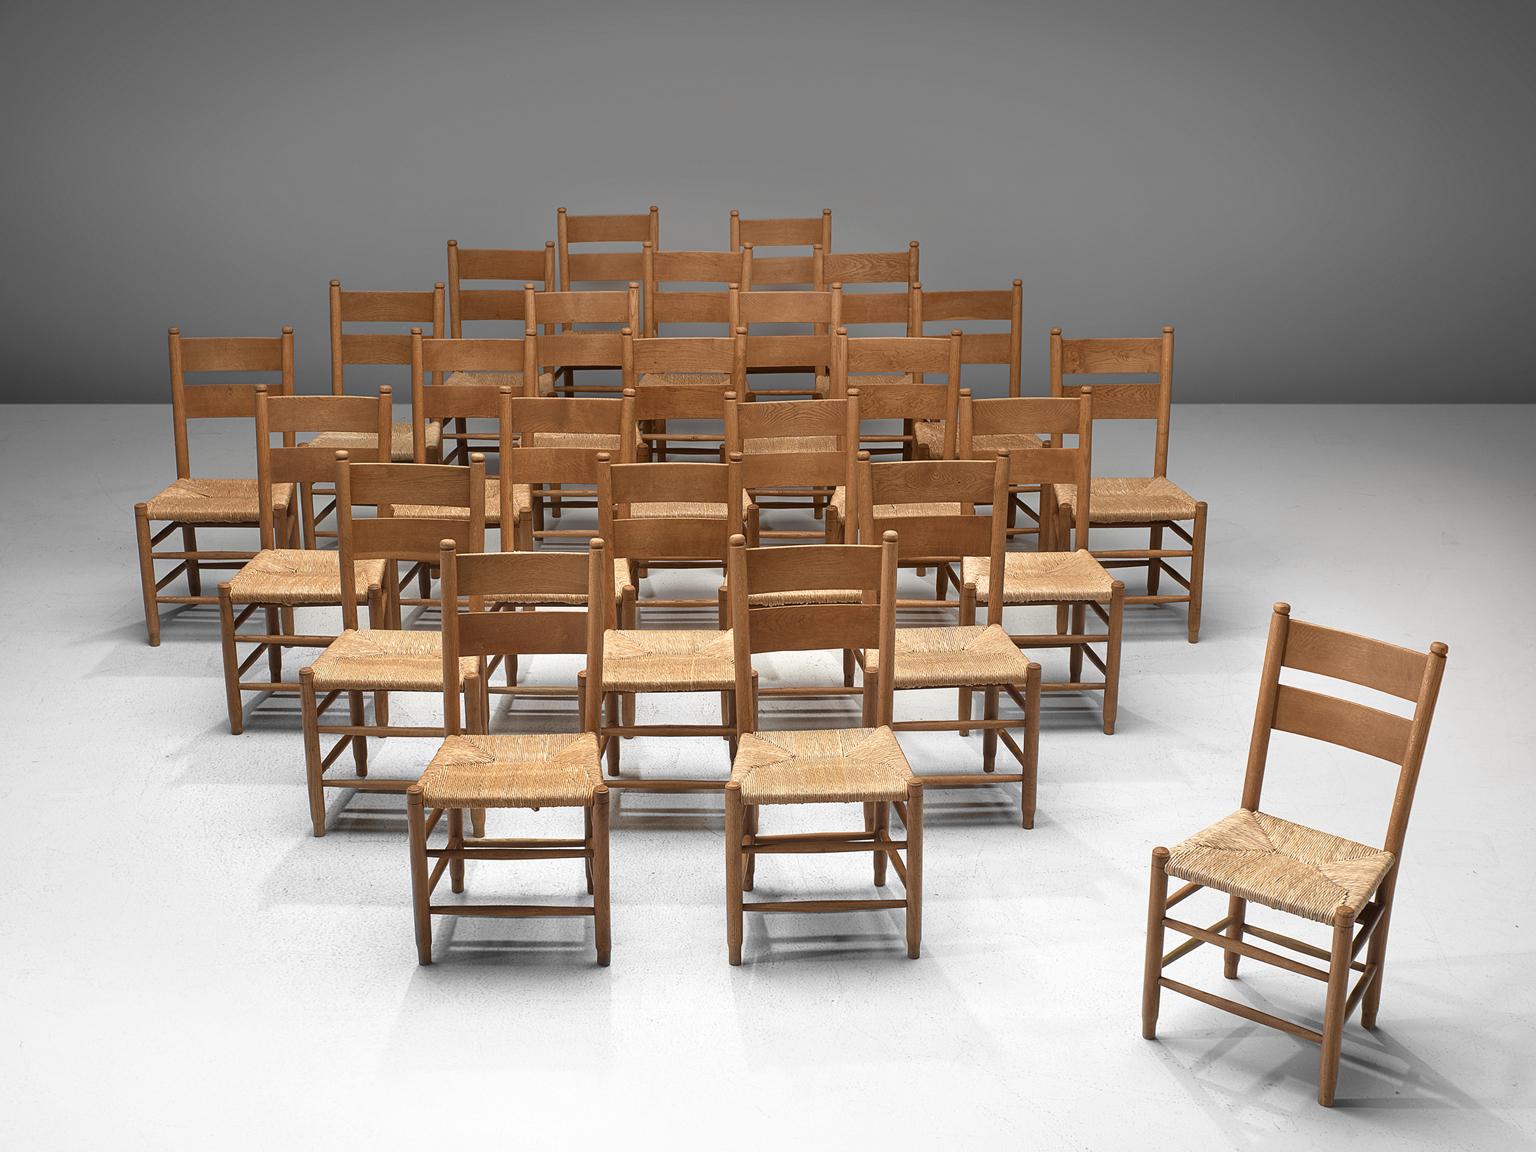 20 church chairs